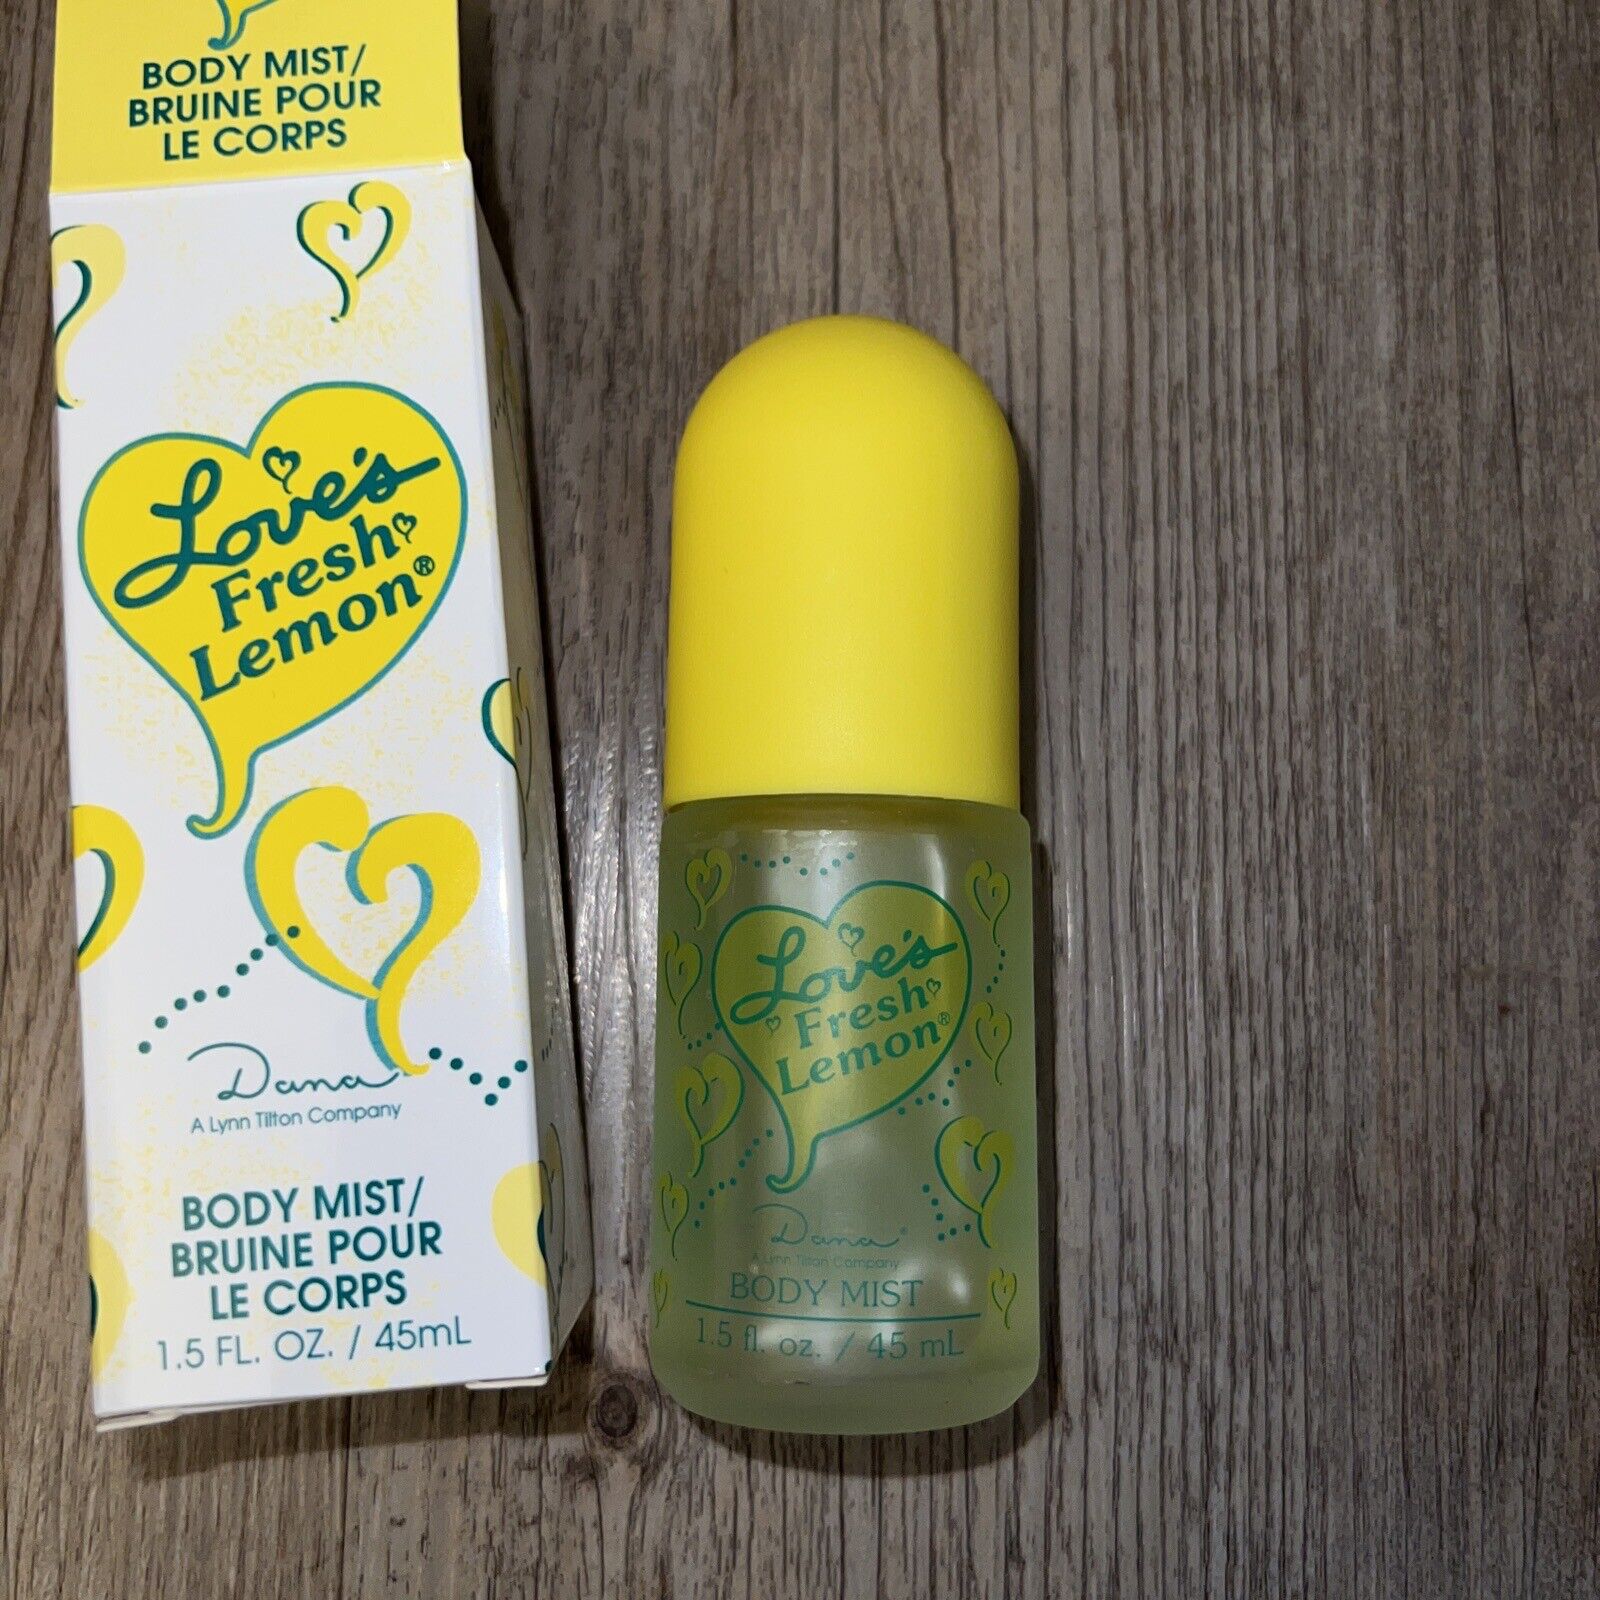 Vintage Love's Fresh Lemon Body Mist 1.5 fl oz NEW IN BOX Dana Lynn Tilton Co